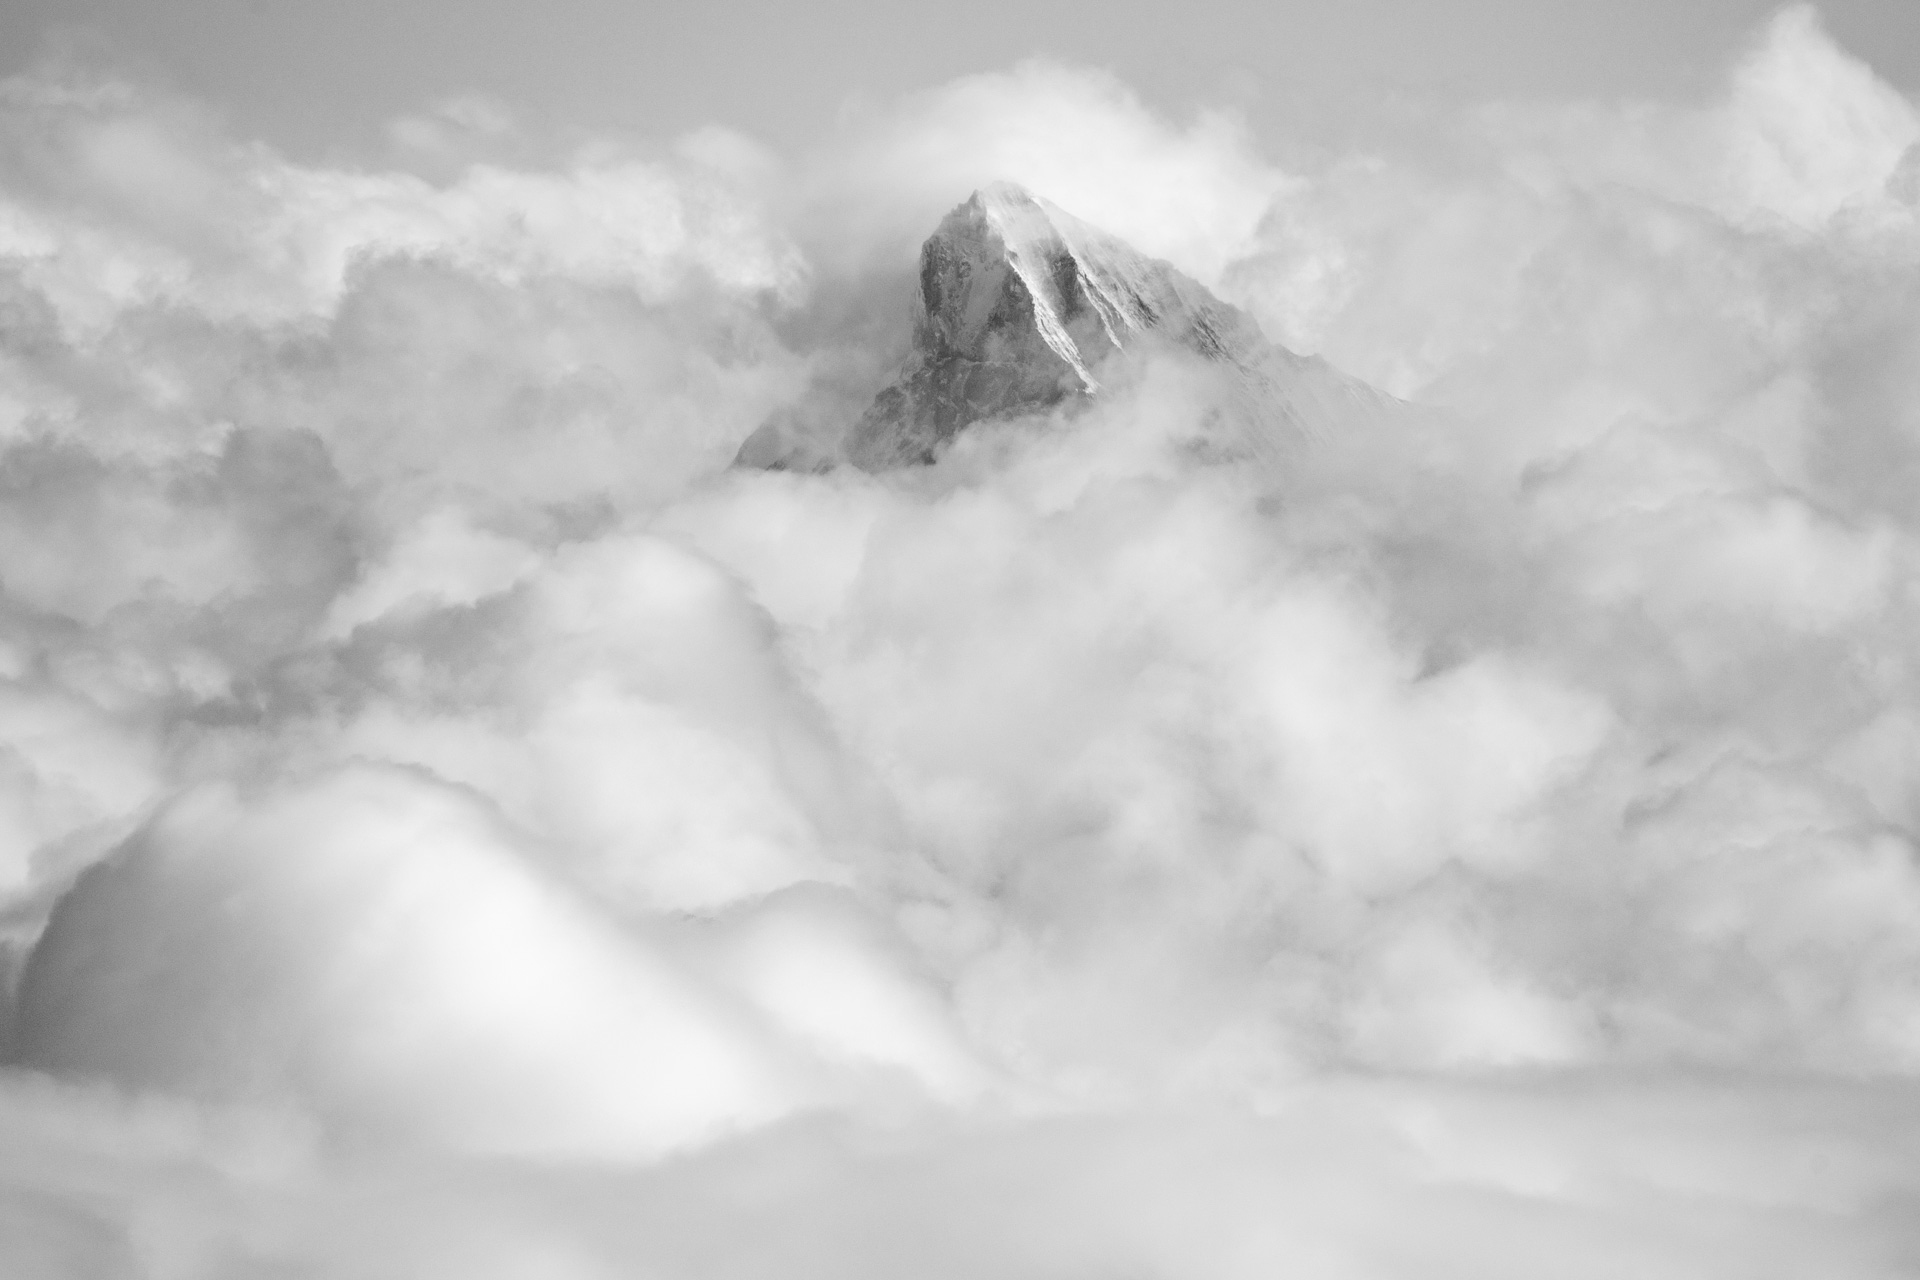 Les dents blanches alpes - Val d hérens - mer de nuage montagne en noir et blanc